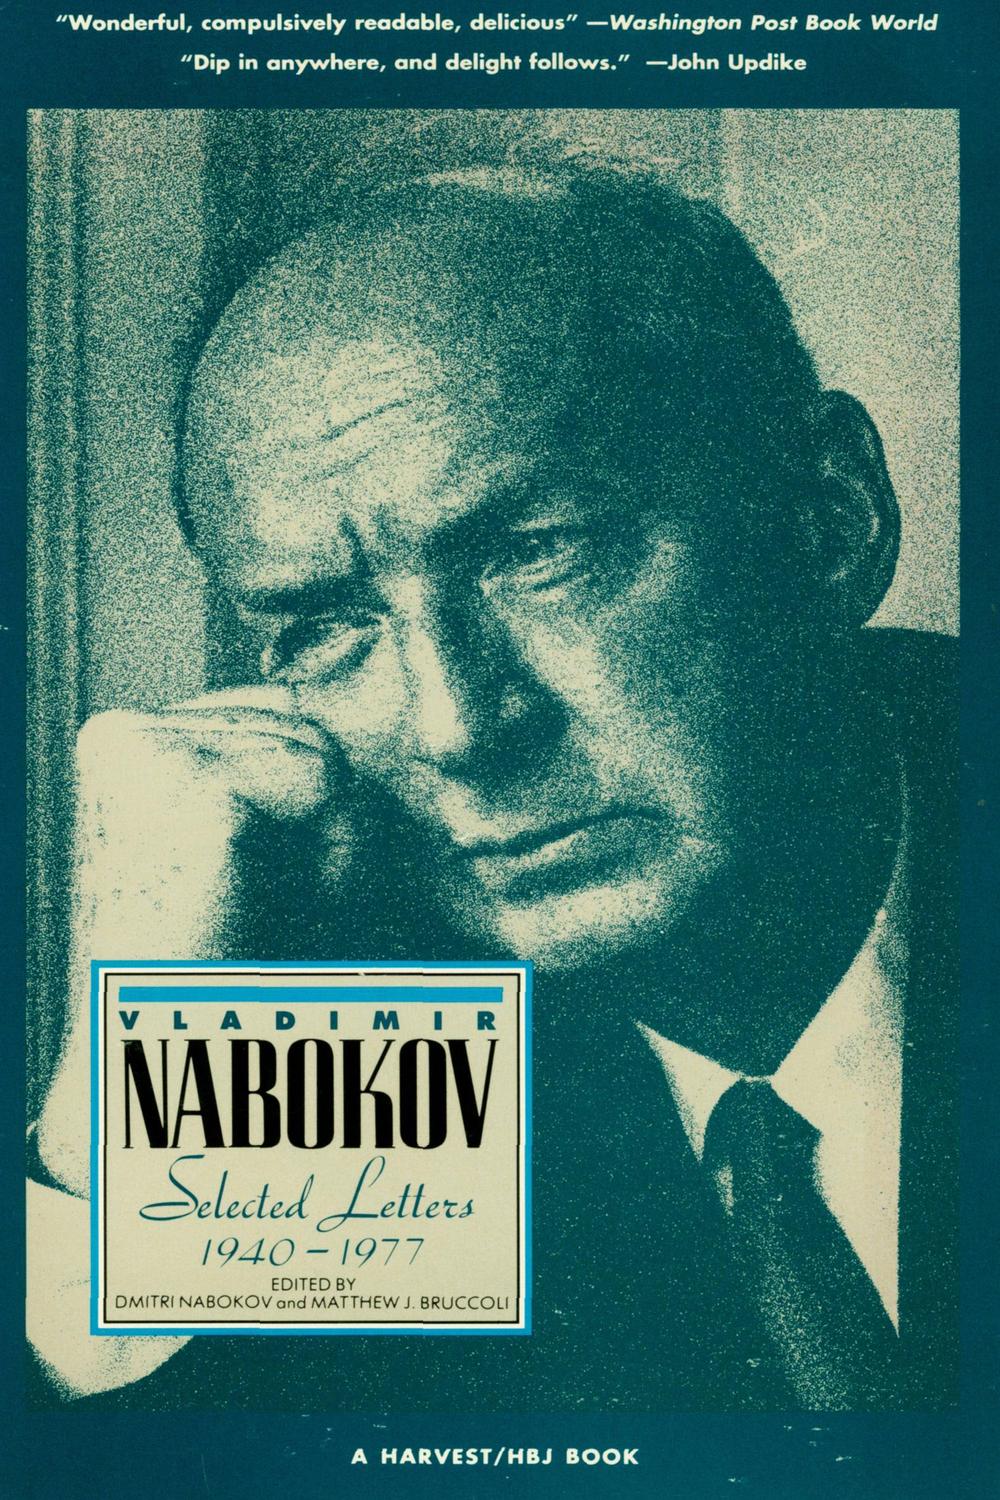 Selected Letters, 1940–1977 - Vladimir Nabokov, Dmitri Nabokov, Matthew J. Bruccoli